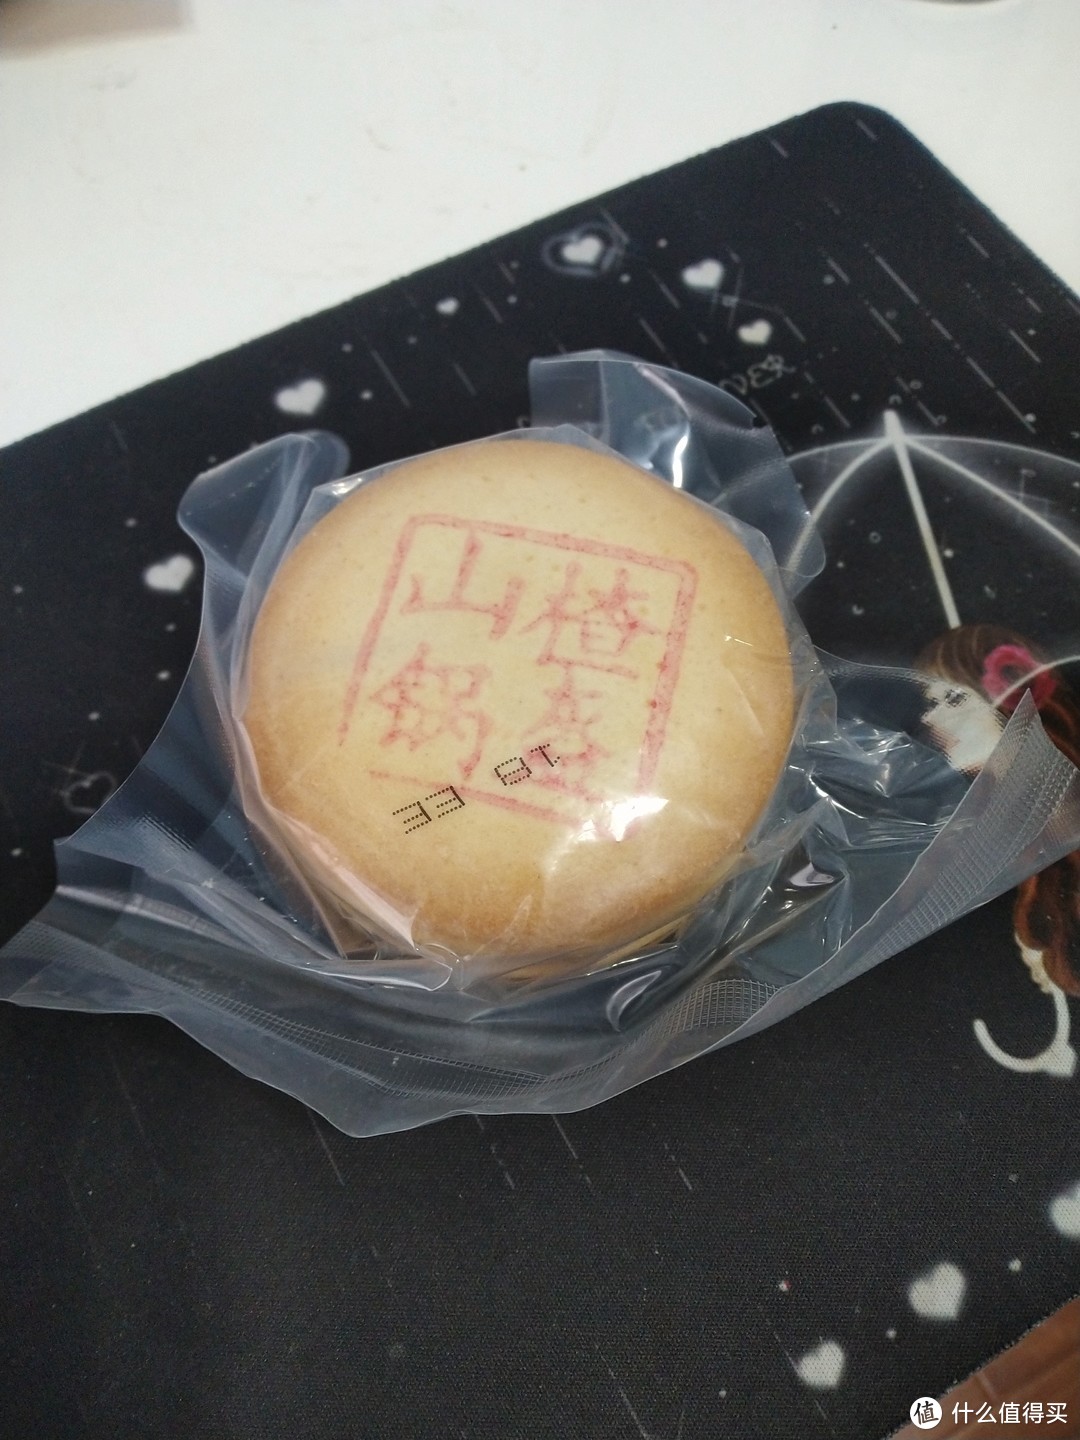 京稻有个塑料外包装，内包装是塑料袋吸塑封装，一袋三枚。